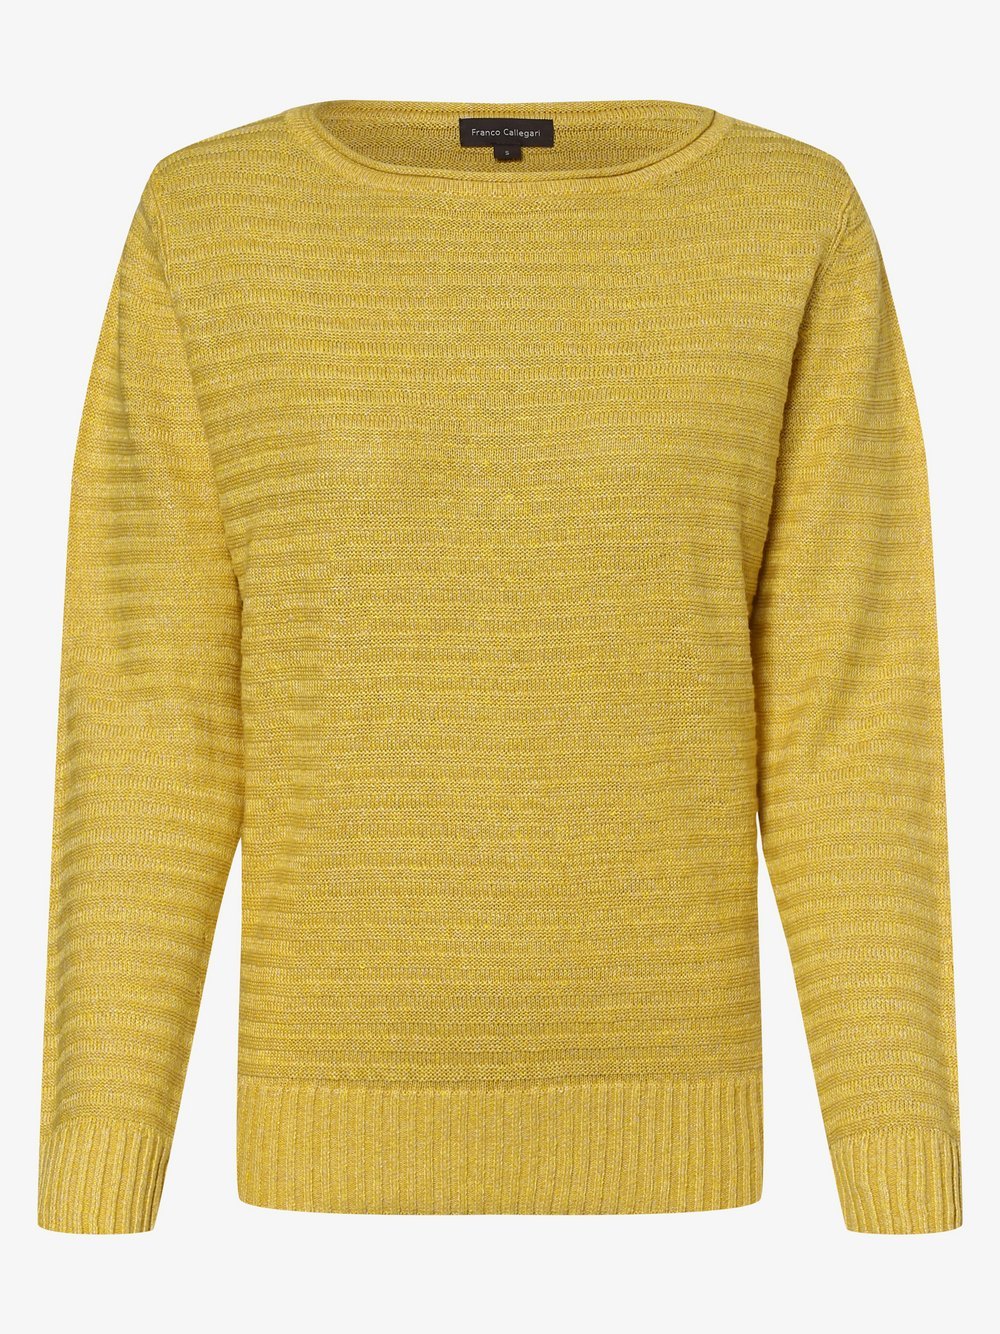 Franco Callegari - Damski sweter lniany, żółty